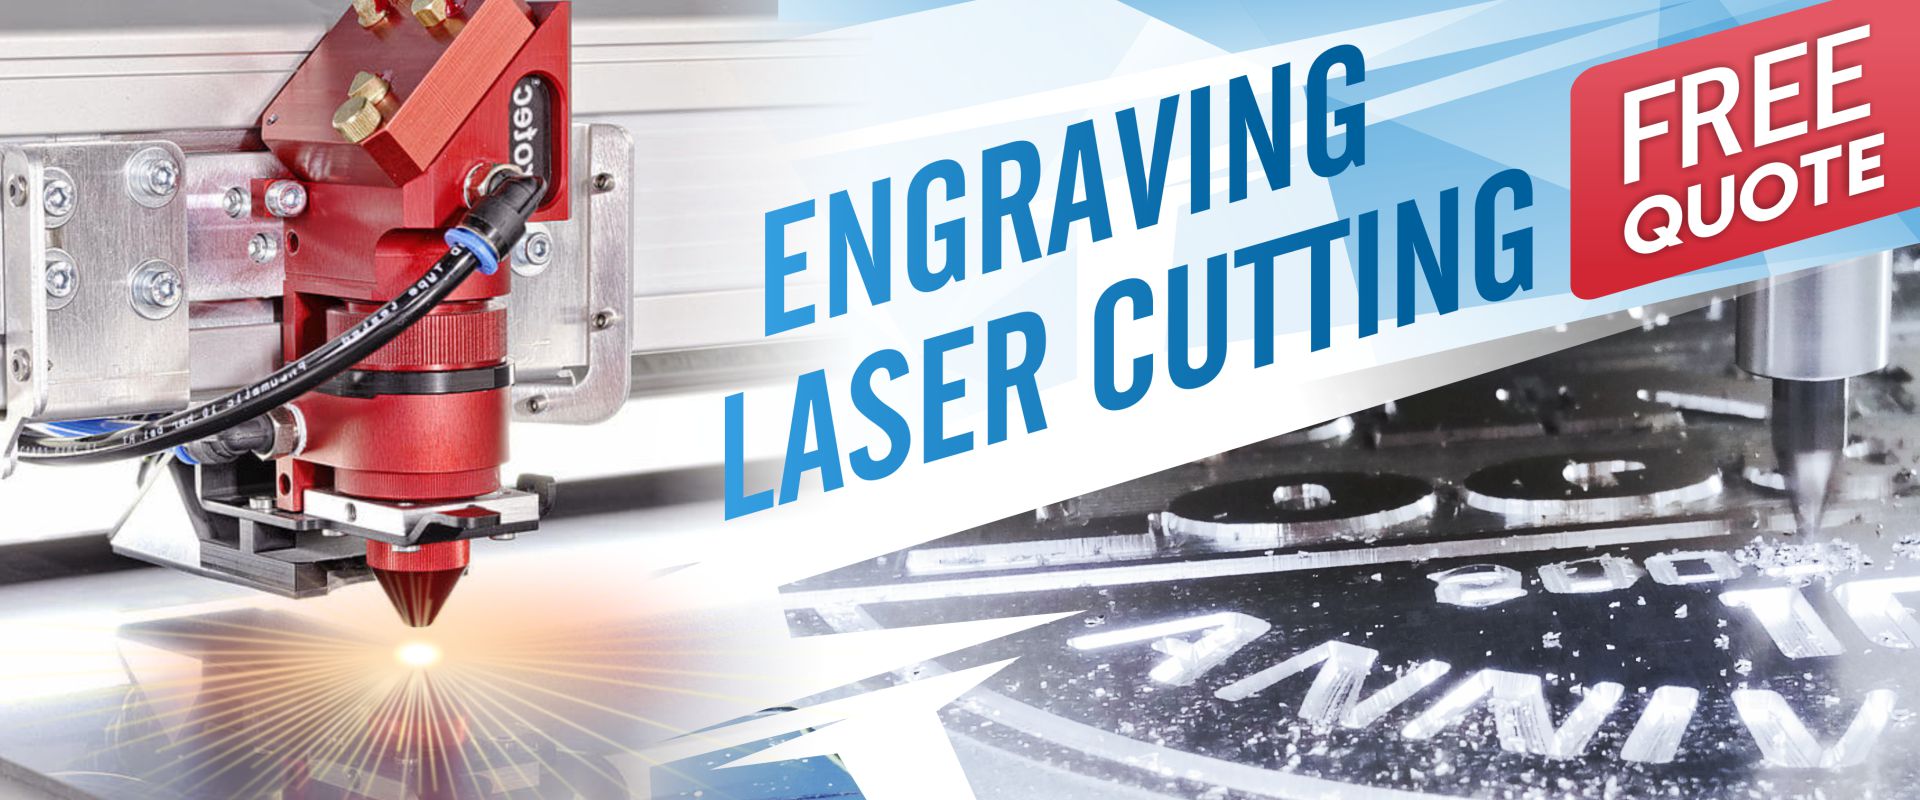 Engraving Laser Cutting